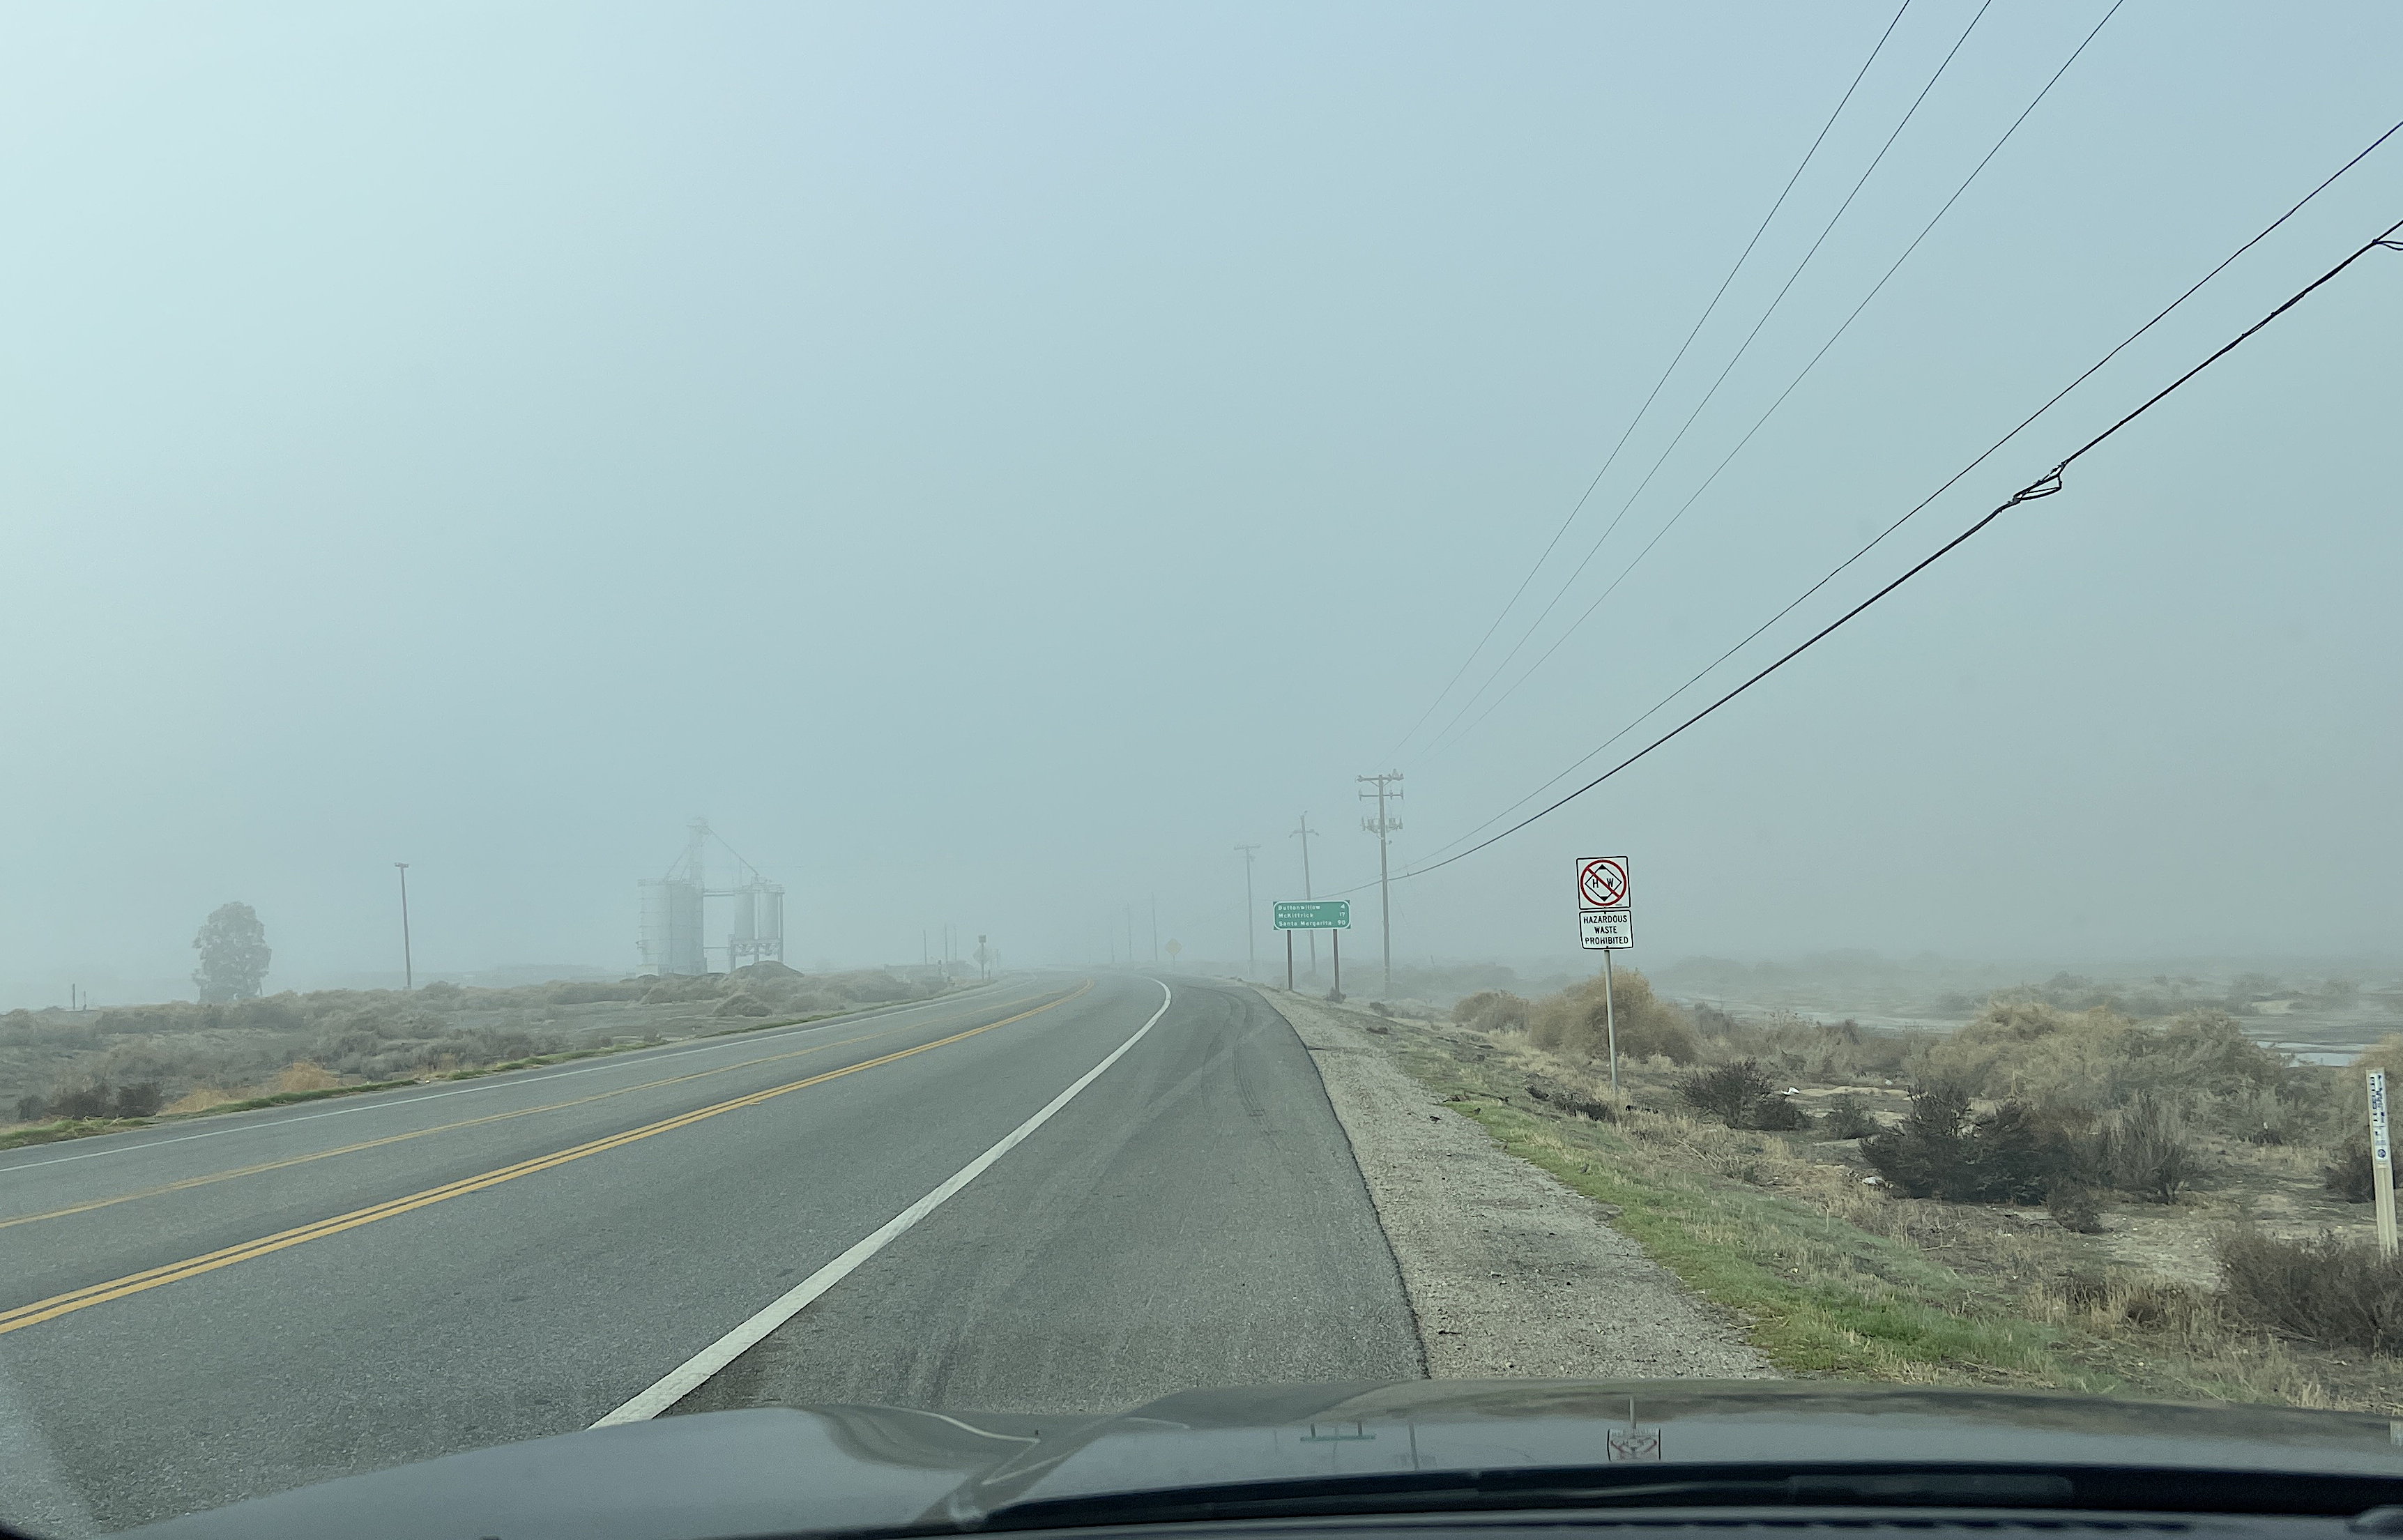 Der Highway bei Buttonwillow. Die Strasse führt direkt in den Nebel. Man erahnt ein Silo am Strassenrand.